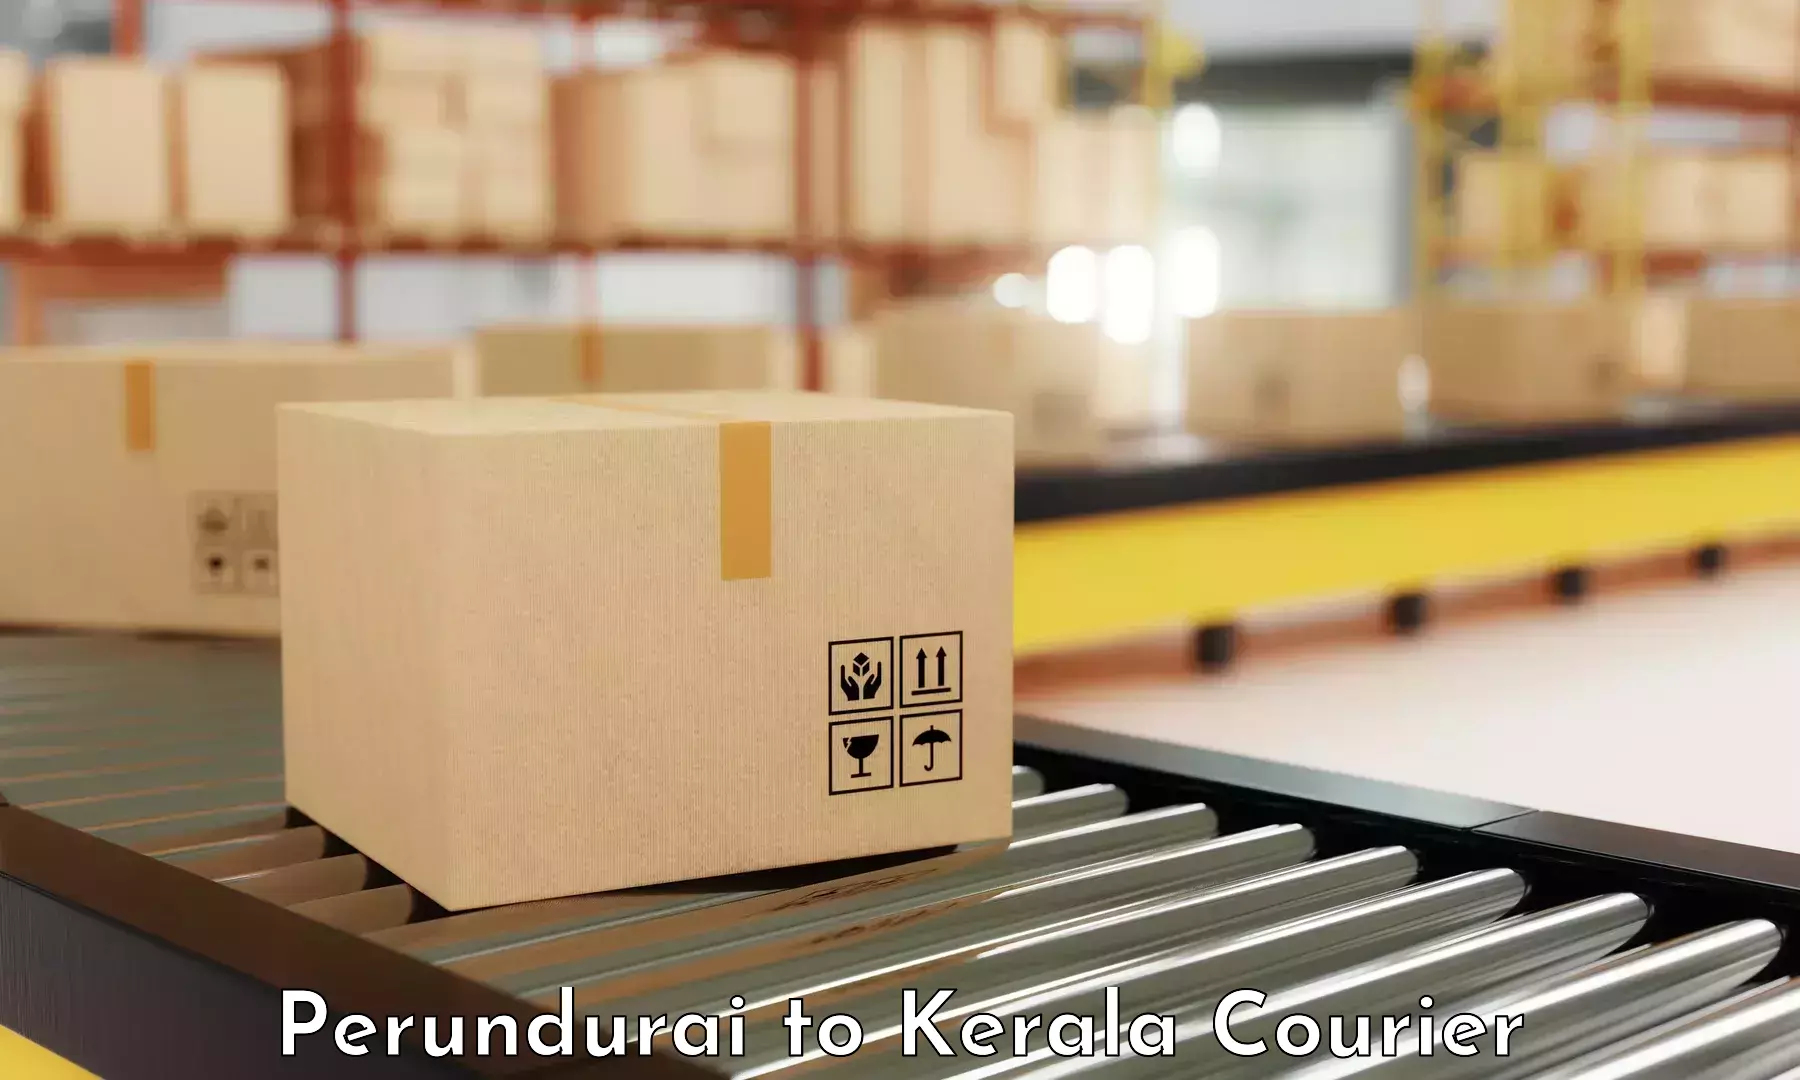 Premium delivery services Perundurai to Kerala